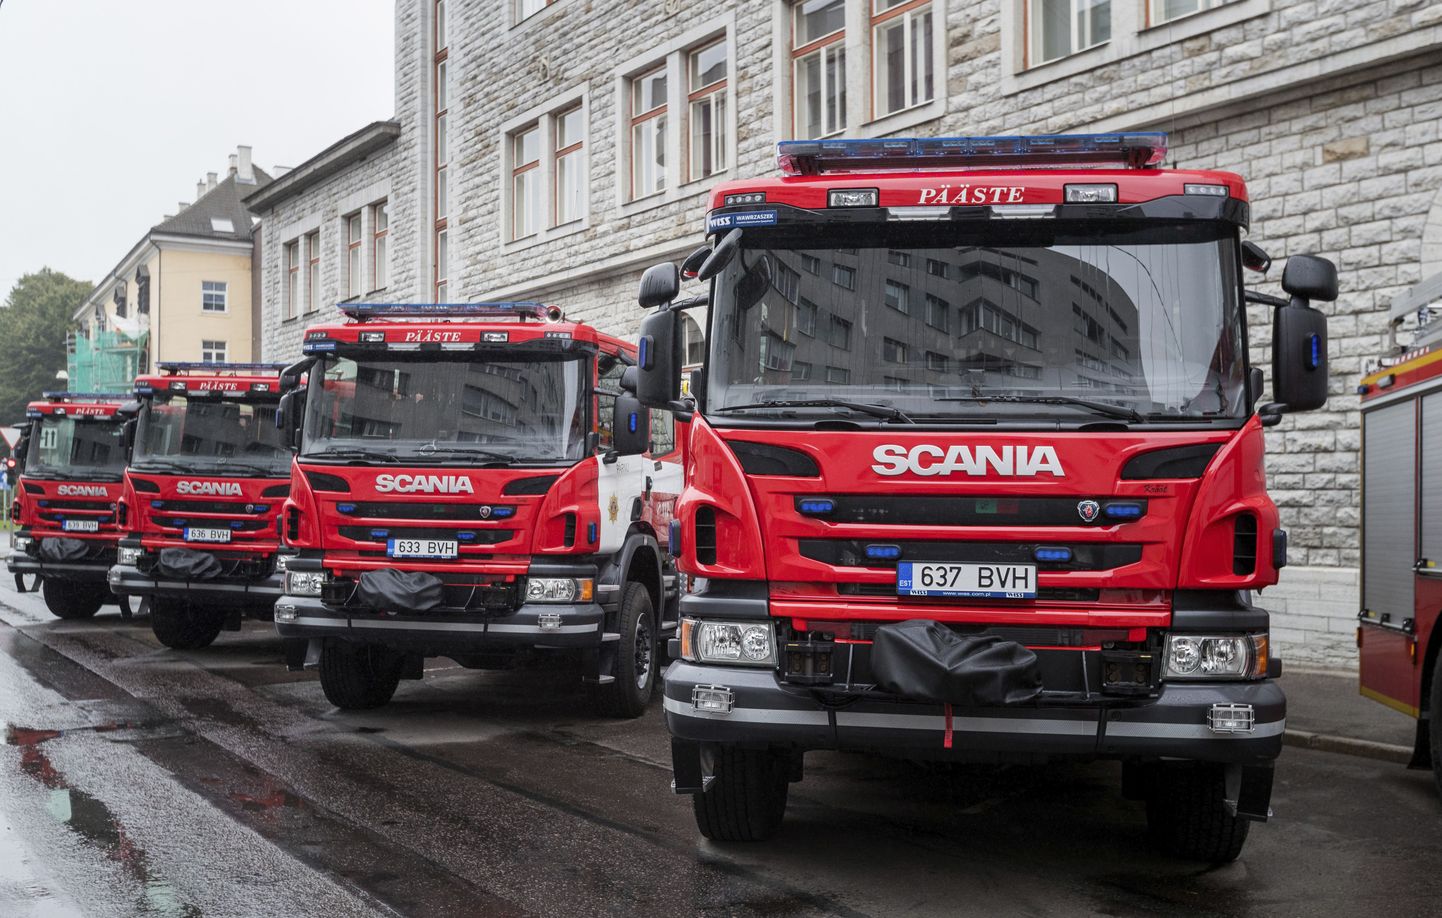 Eelmisel nädalal saabusid Eestisse päästeteenistuse uued põhiautod.